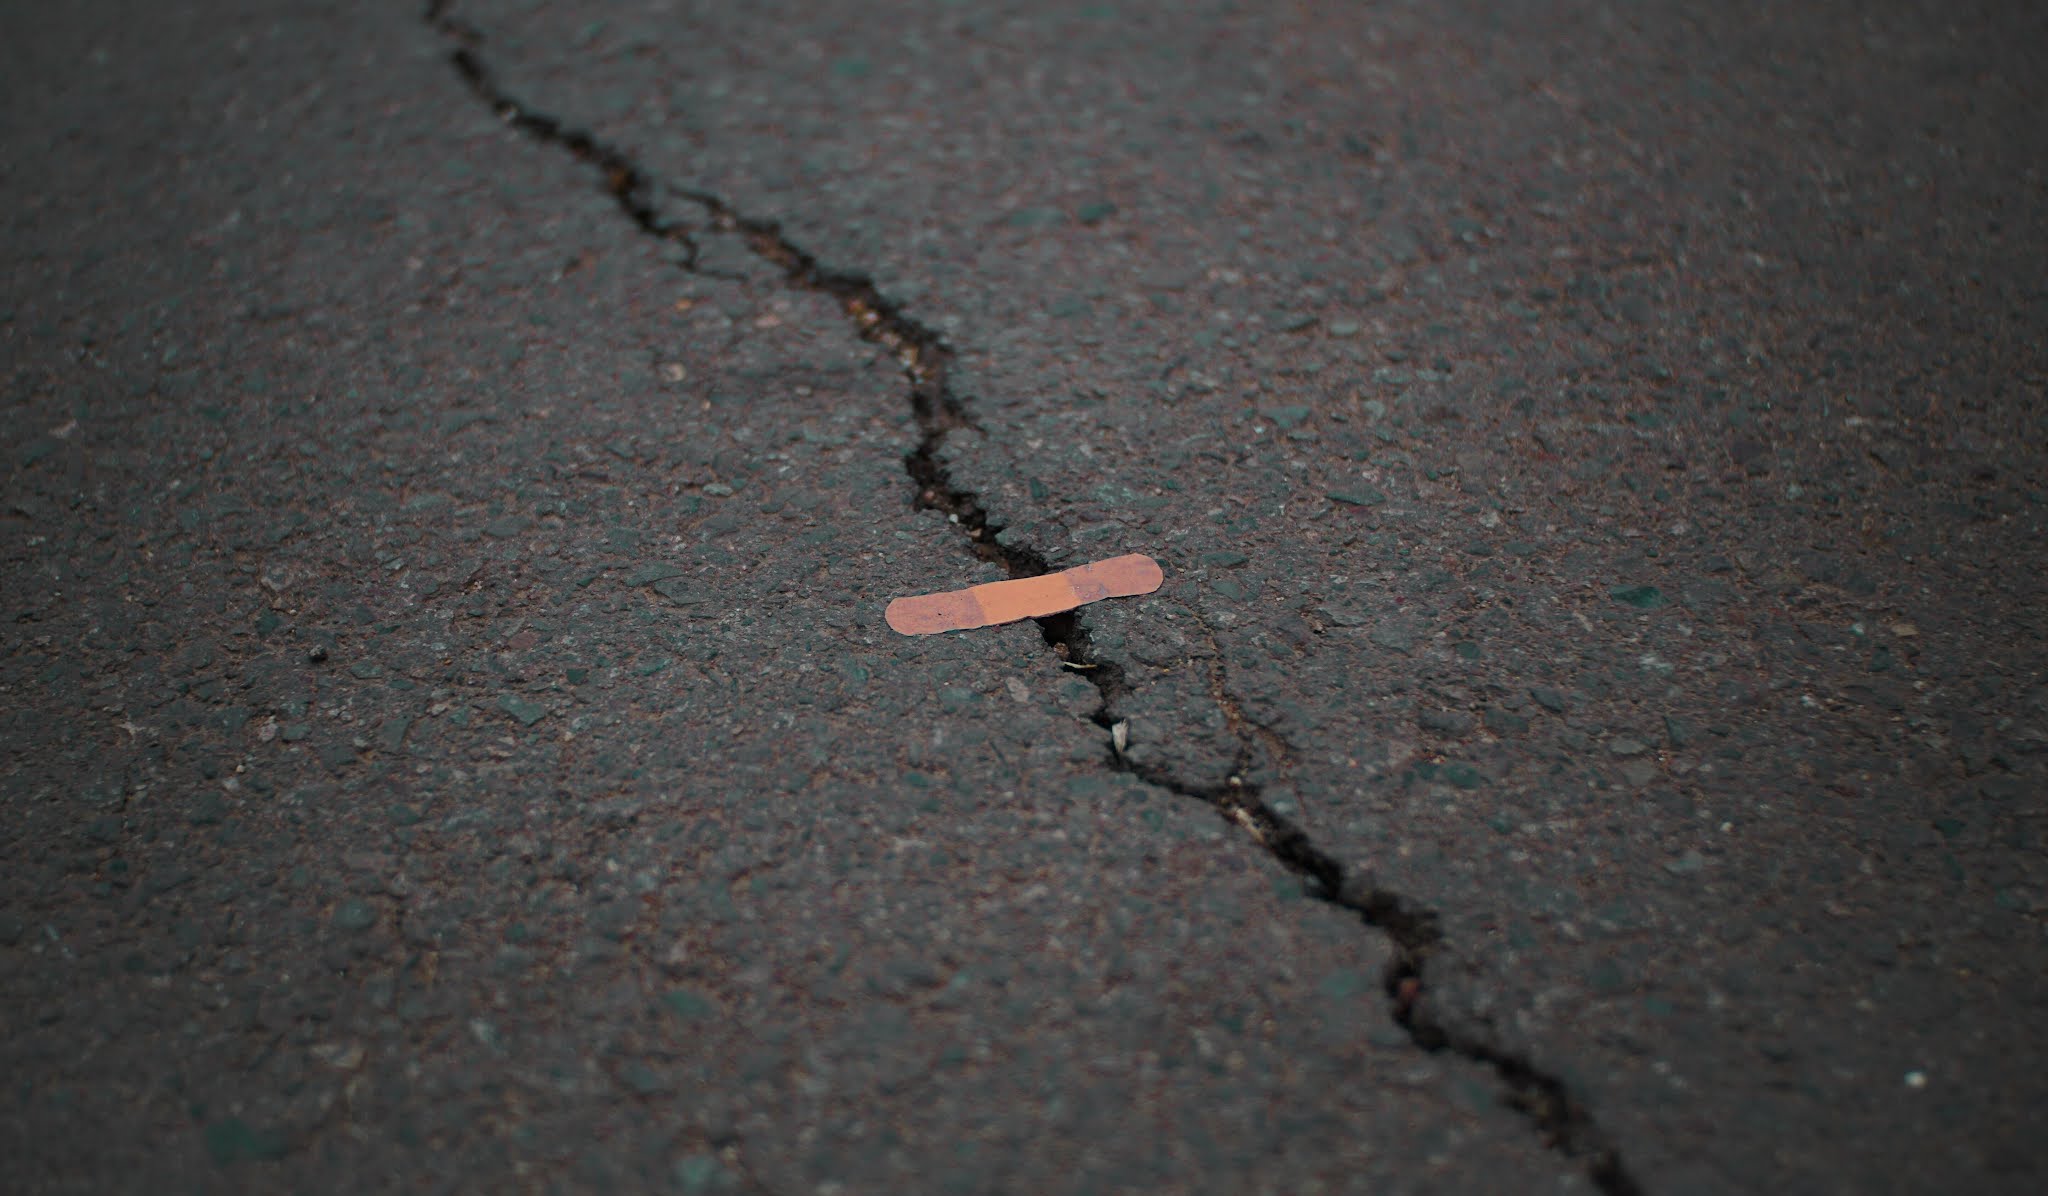 Bandaged on Road Funny Photo